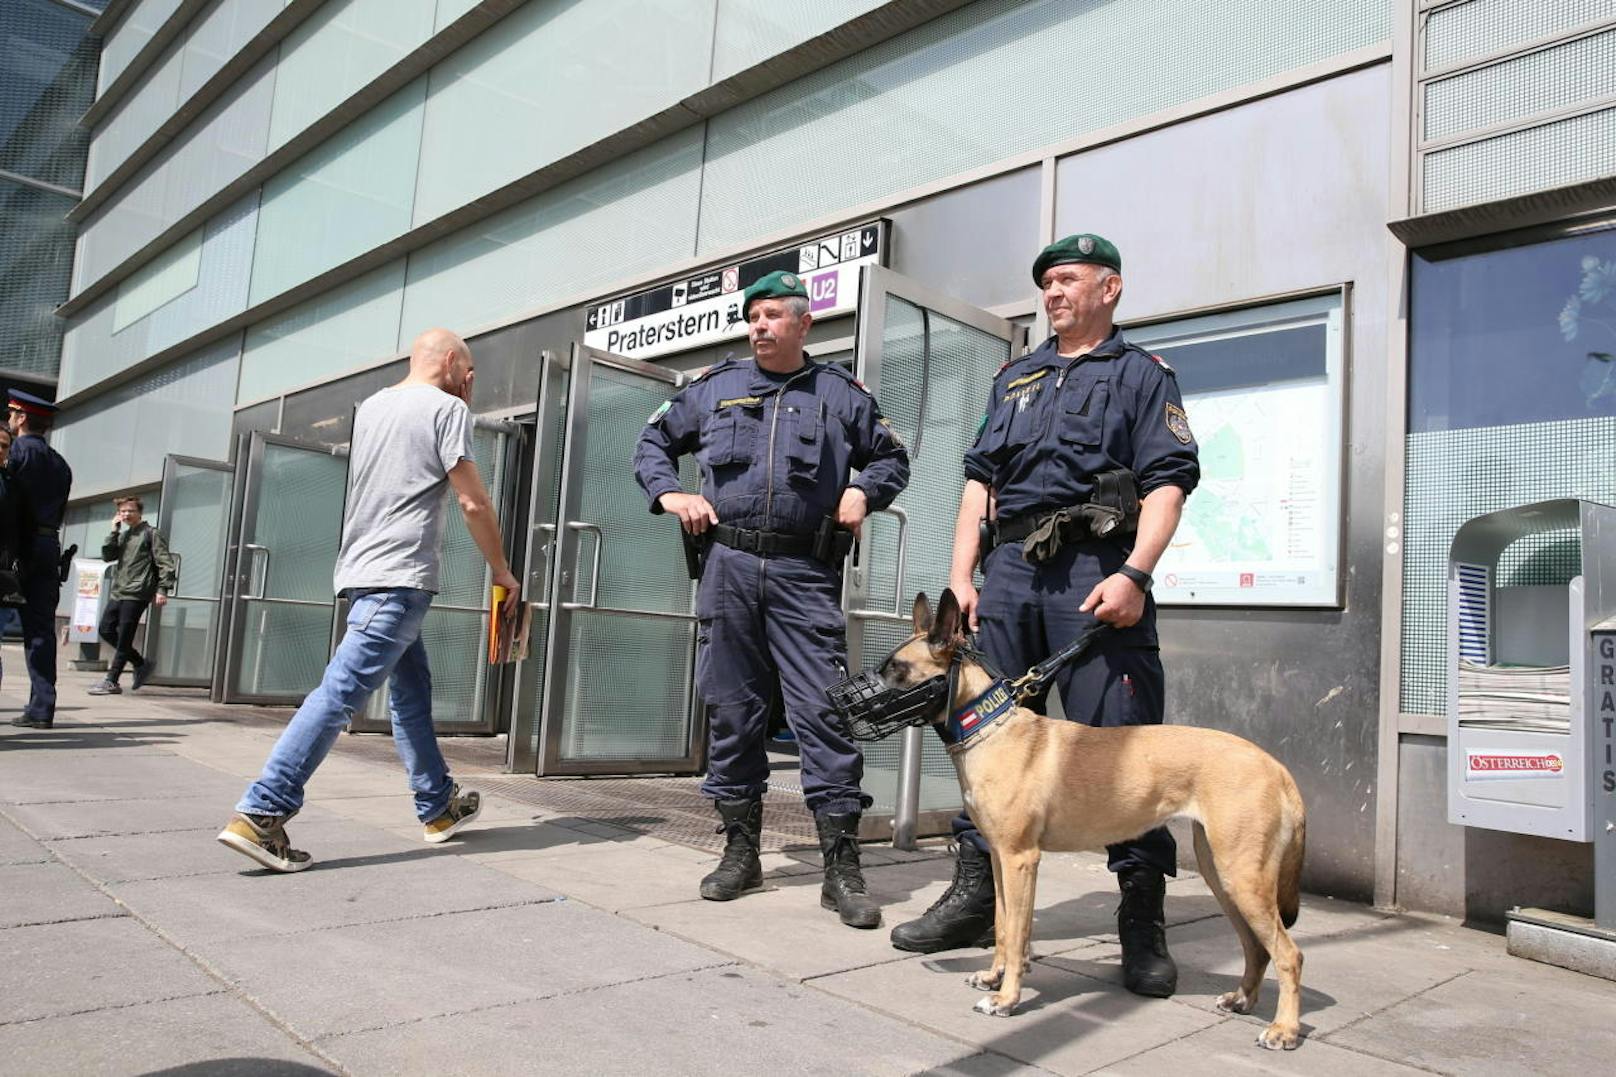 Seit 27. April gilt am Wiener Öffi-Knoten Praterstern ein Alkoholverbot. Die Polizei kontrollierte bereits am ersten Tag streng, rund 20 Polizisten und auch vier Diensthunde waren im Einsatz. Es kam am Vormittag zu einer Festnahme.